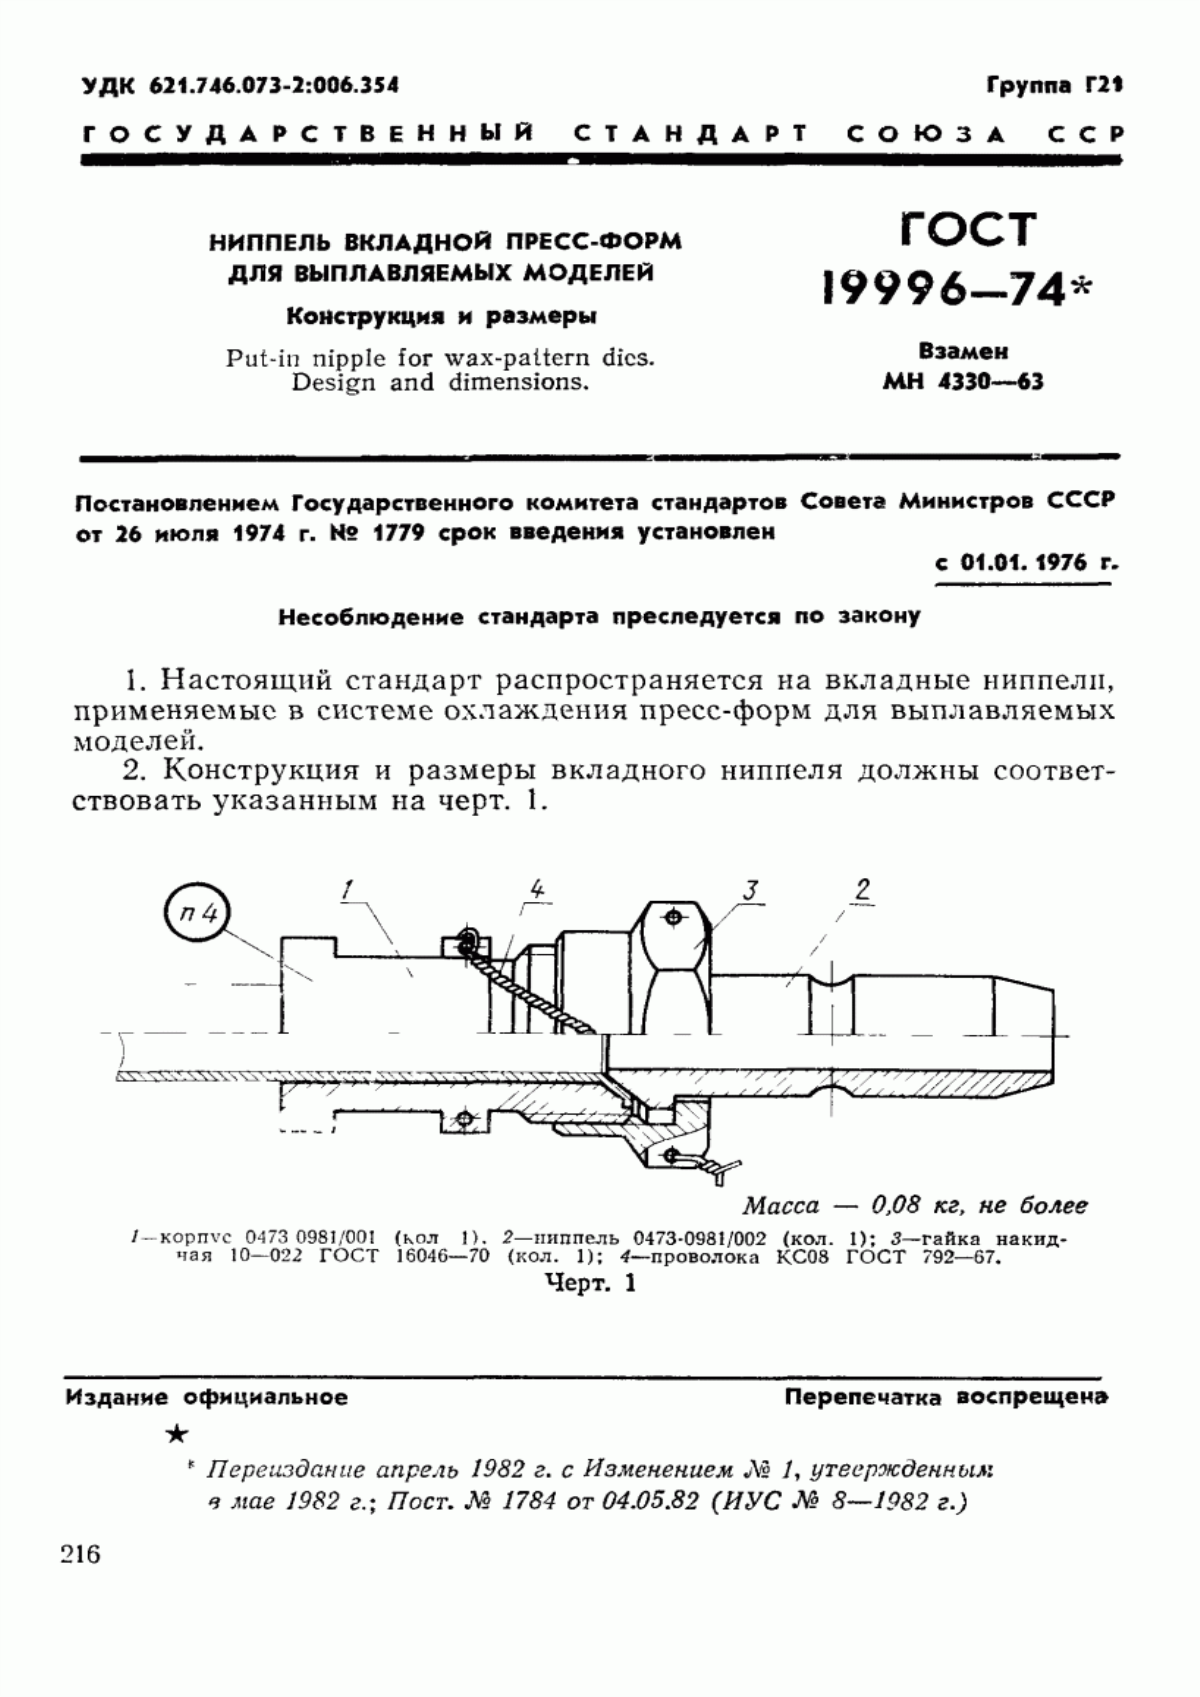 ГОСТ 19996-74 Ниппель вкладной пресс-форм для выплавляемых моделей. Конструкция и размеры